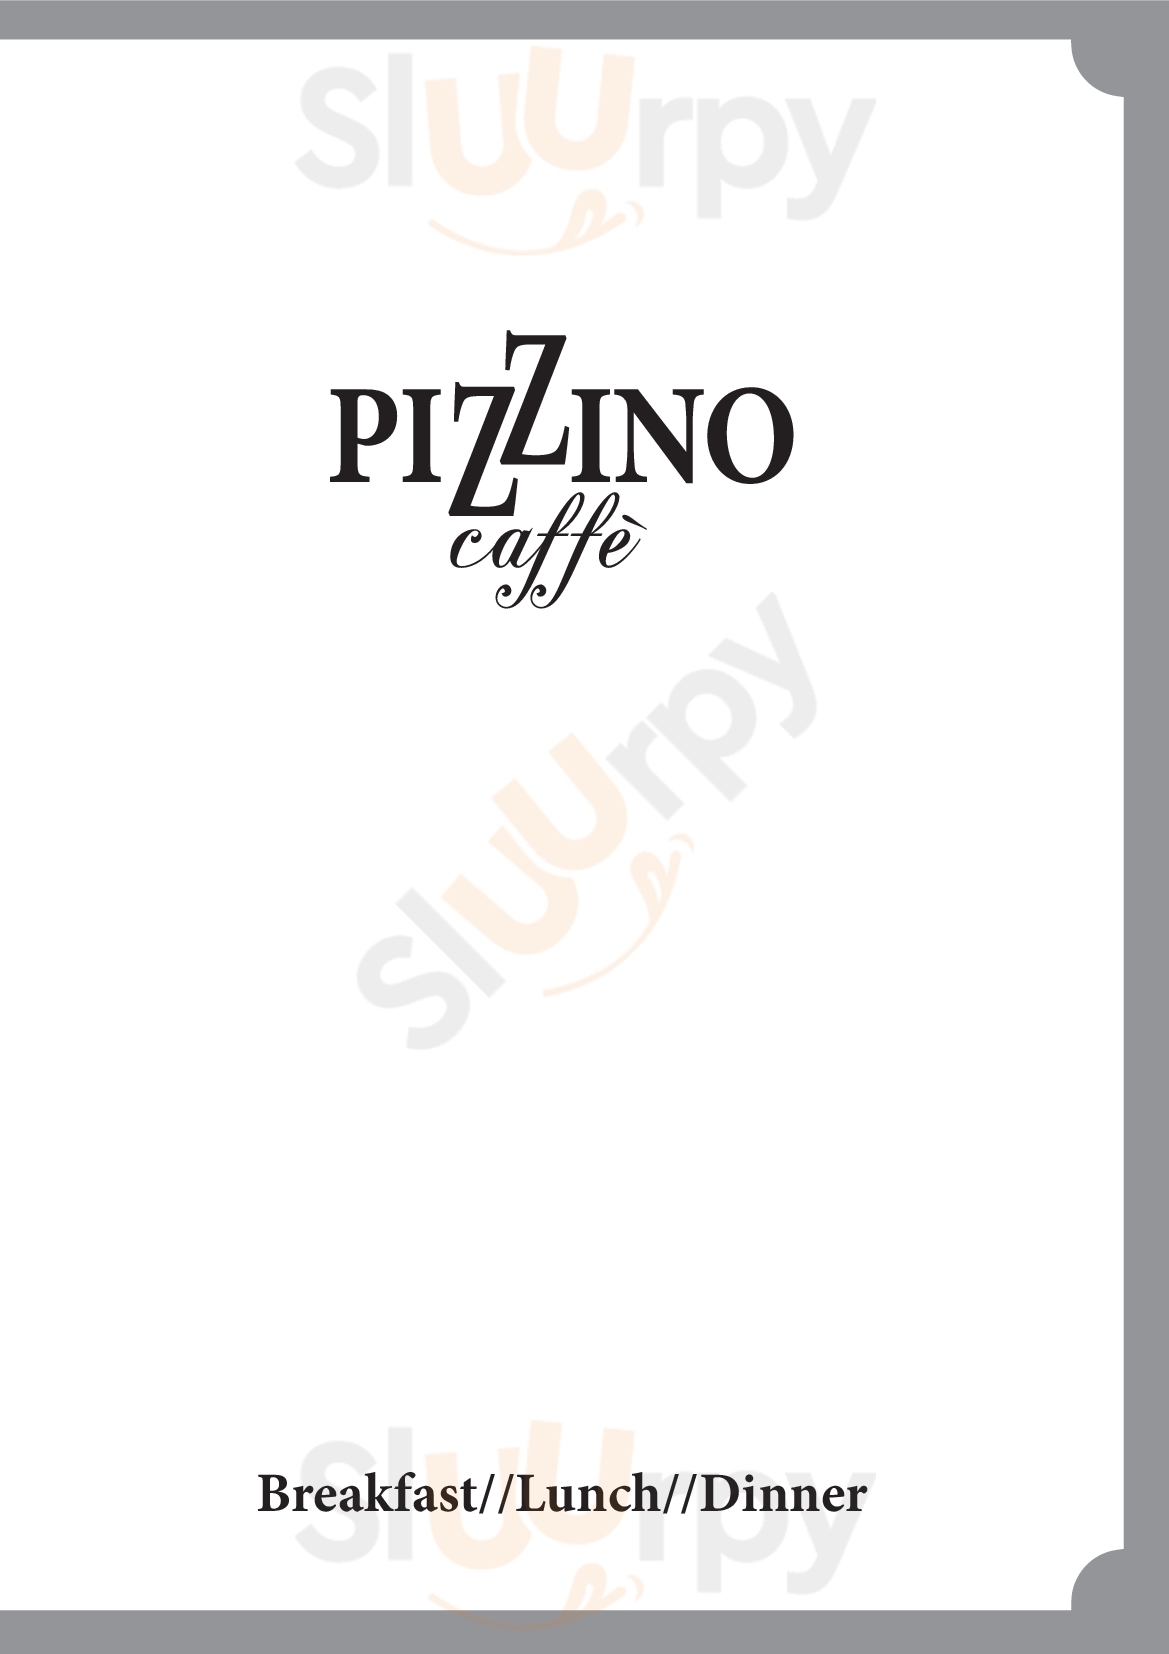 Pizzino Caffé Firenze menù 1 pagina